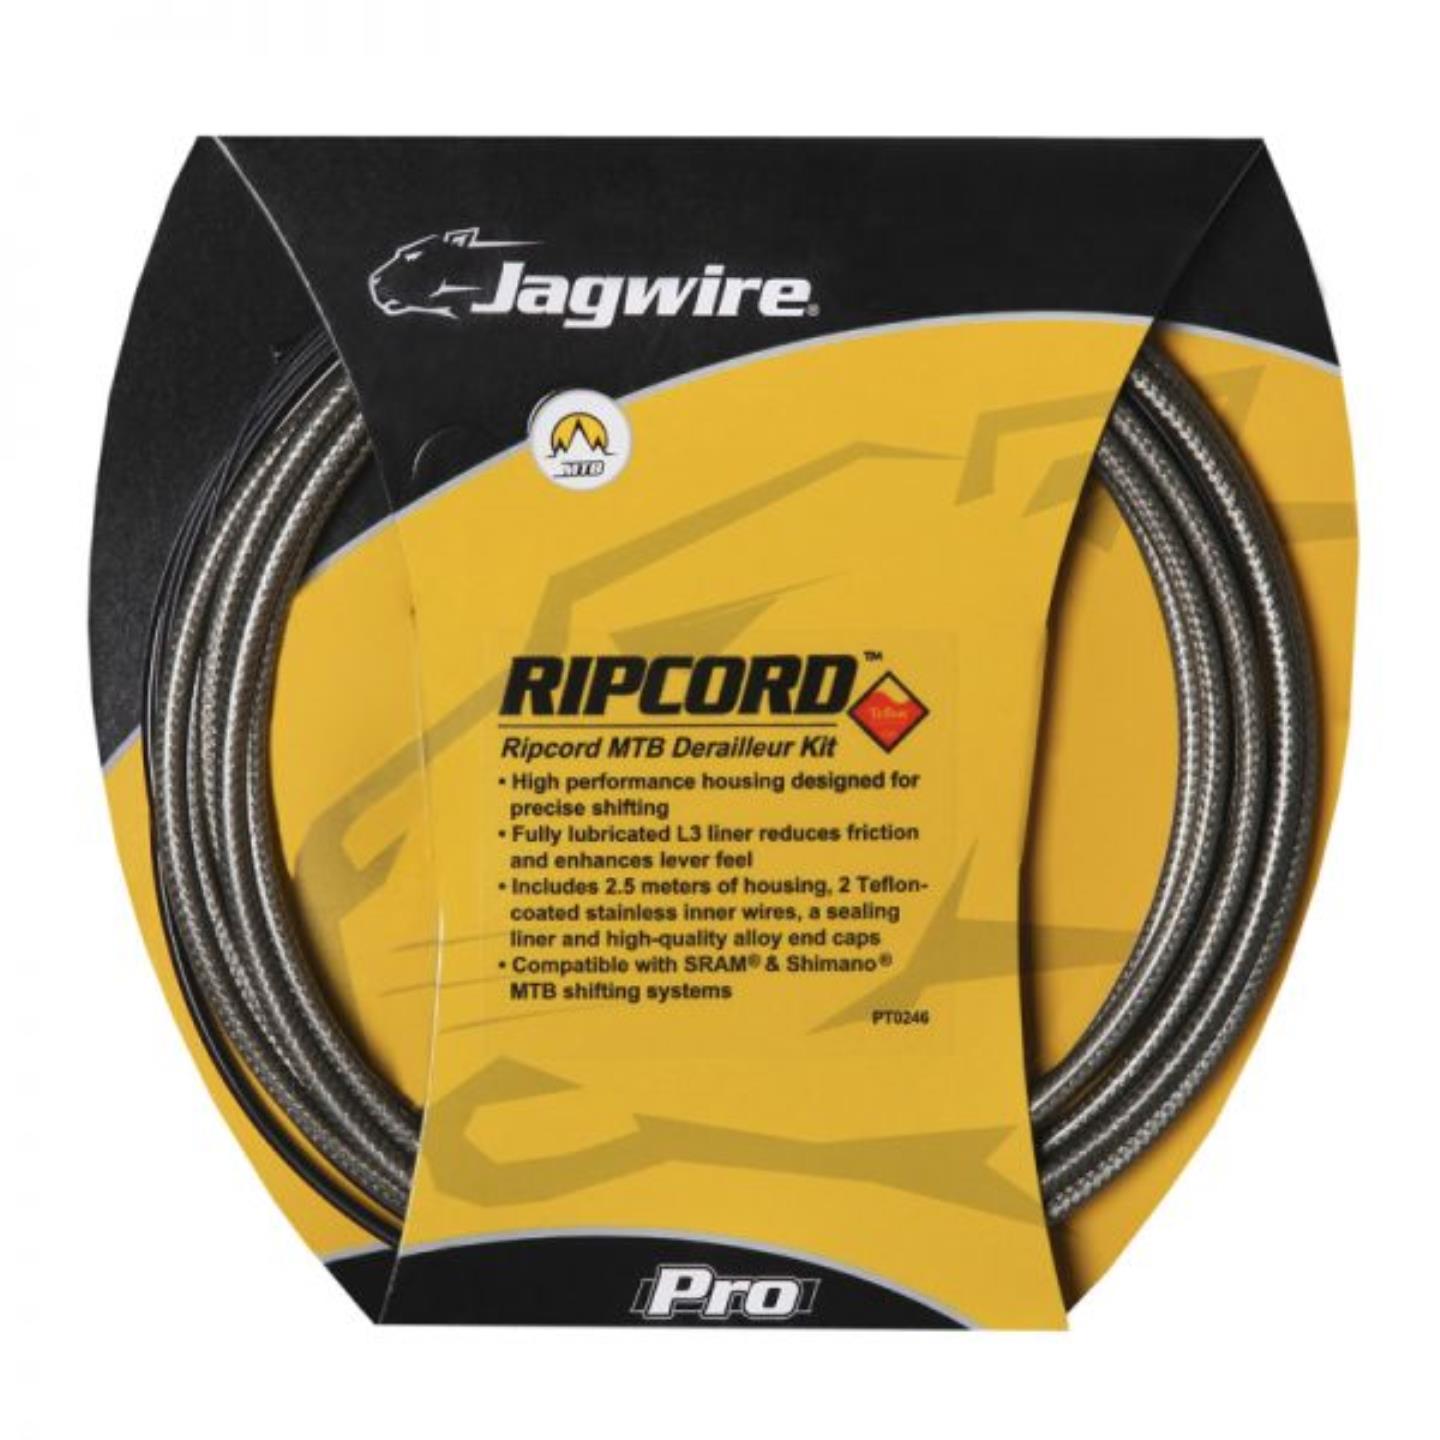 Jagwire καλώδια και σύρματα ταχυτήτων Ripcord MTB C40